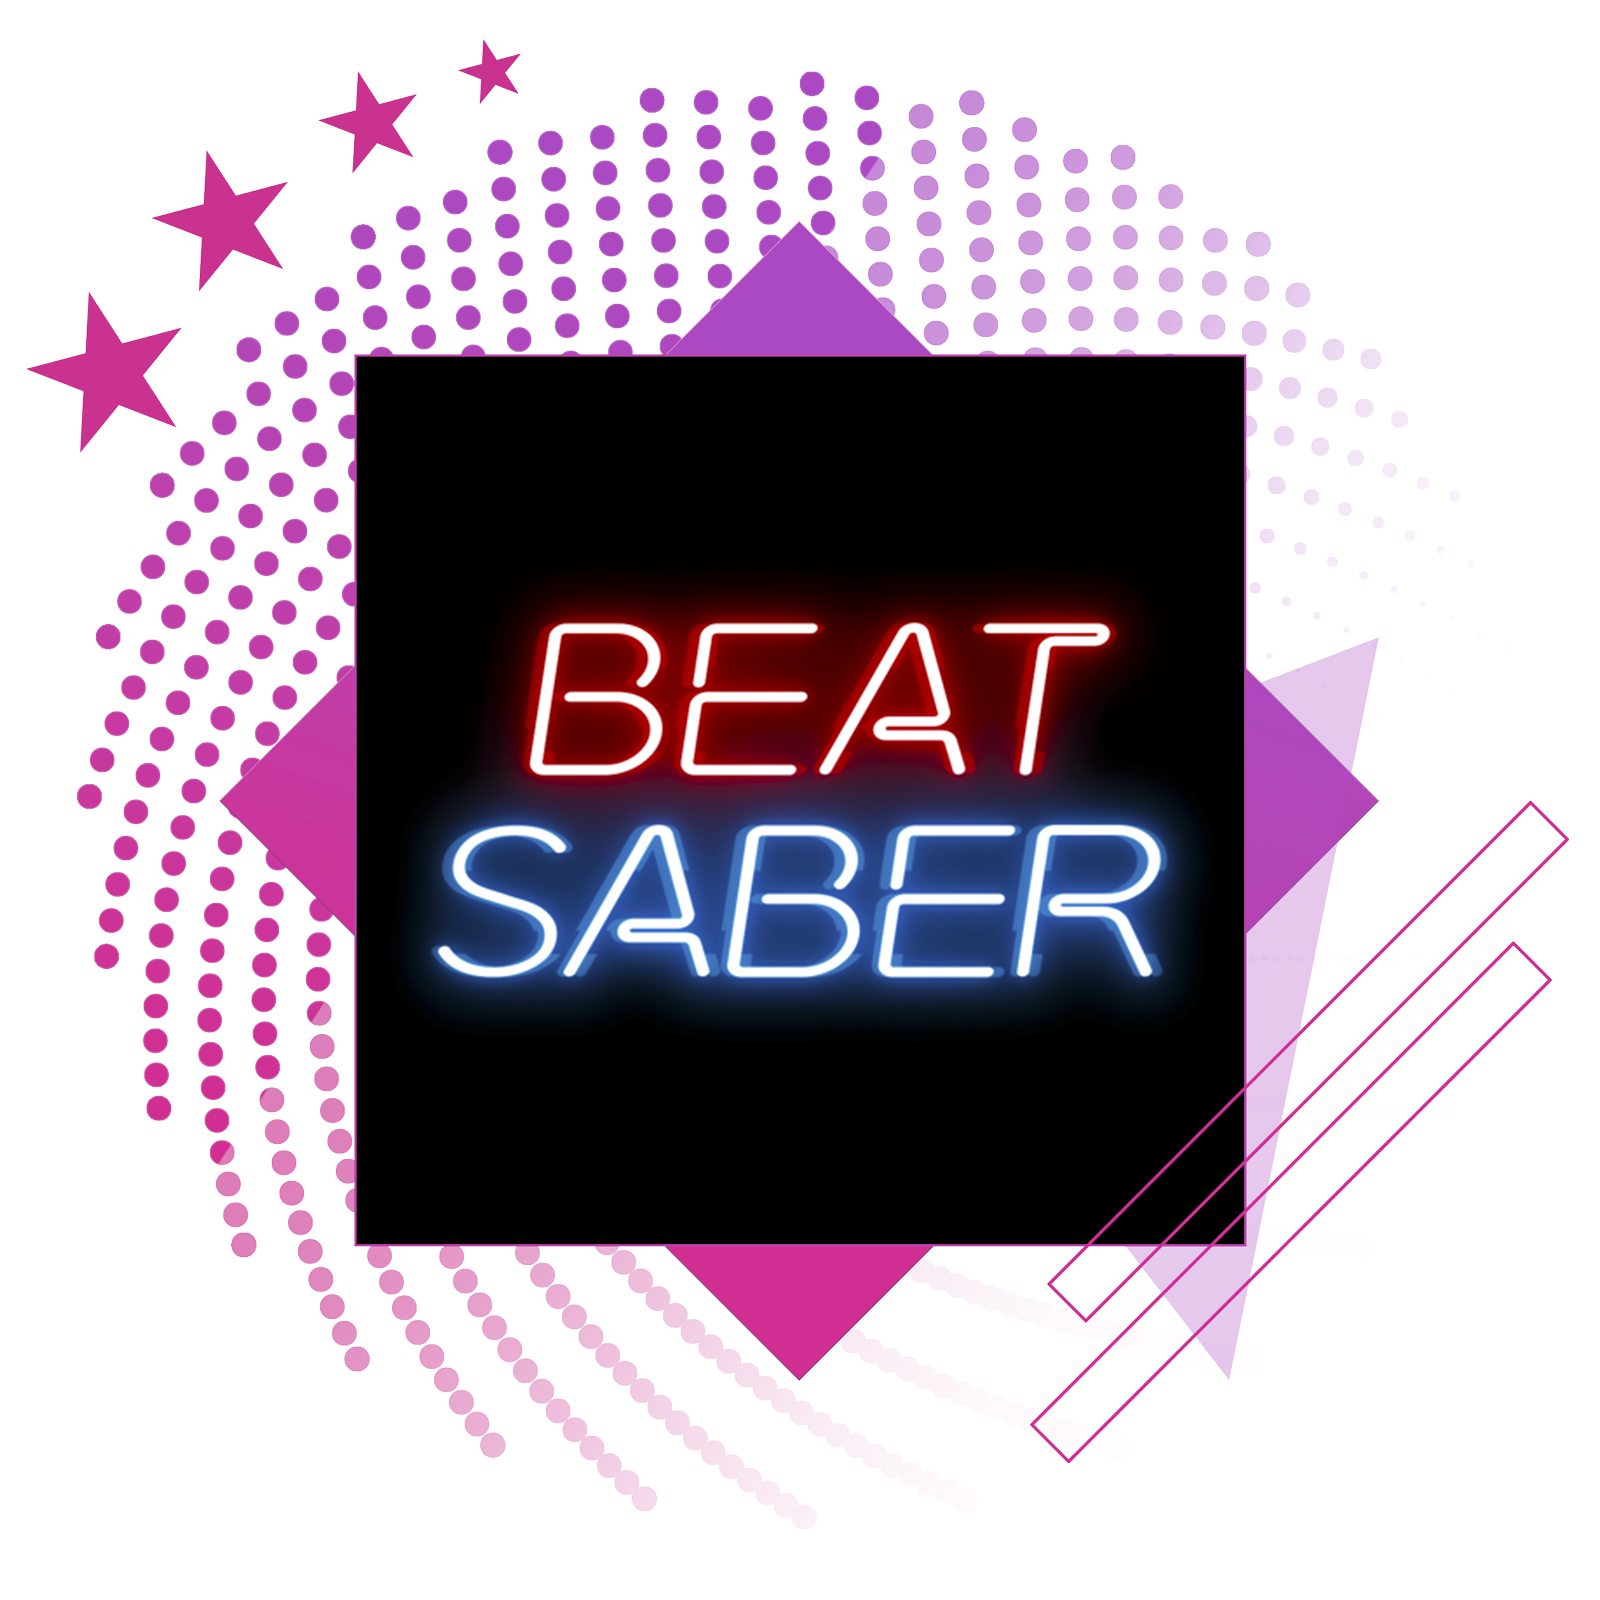 De bästa rytmspelen – artikelbild med key art från Beat Saber.